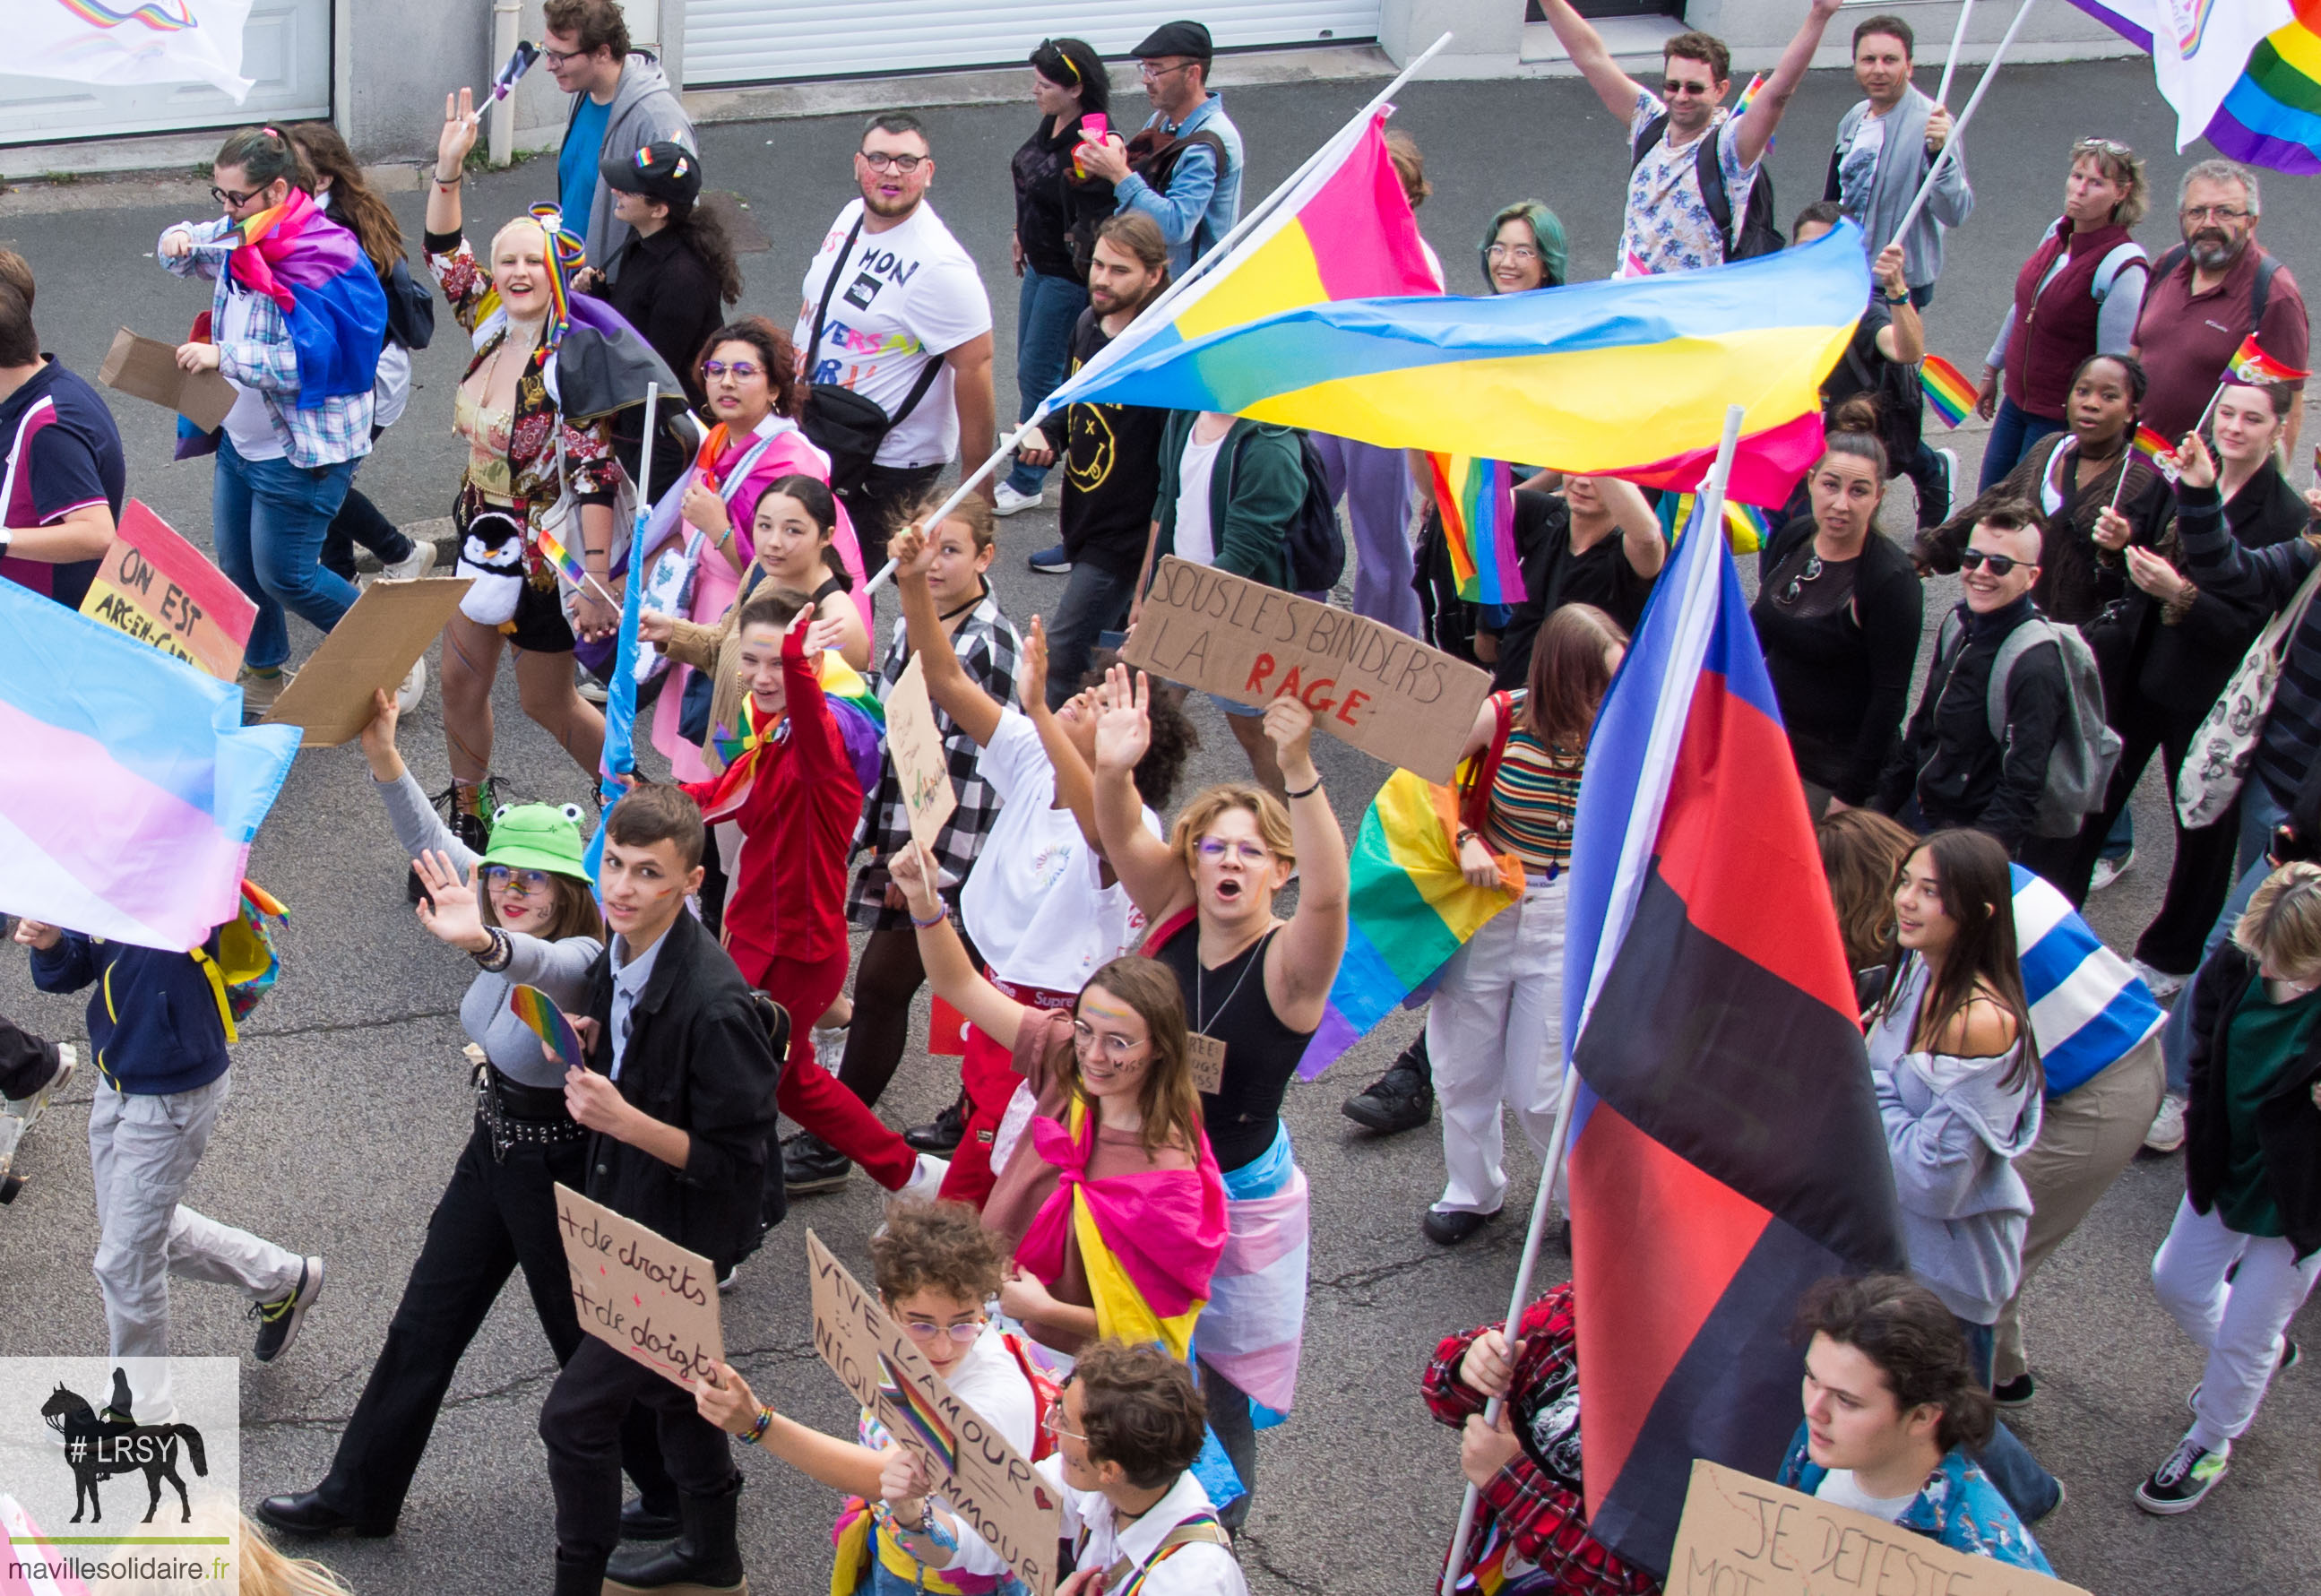 Marche des fierté LGBT LRSY mavillesolidaire.fr Vendée 17